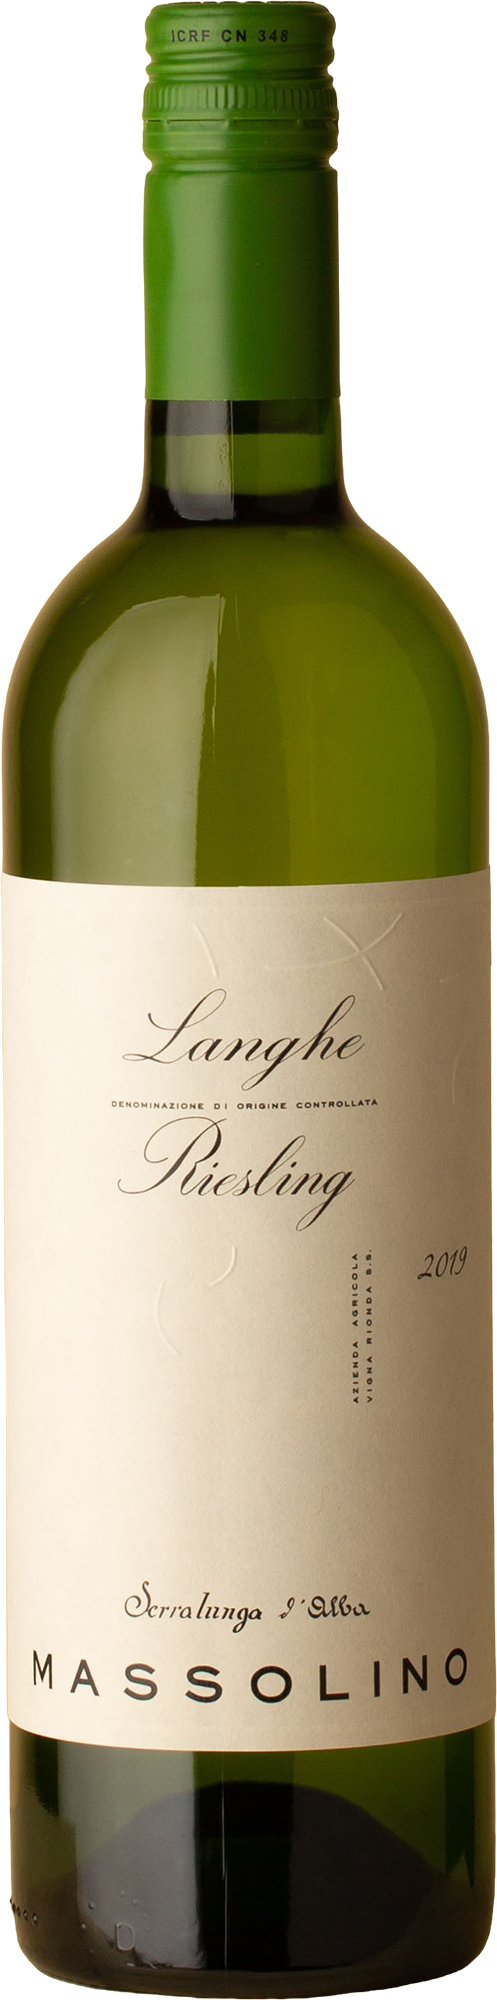 Massolino - Langhe Riesling 2019 White Wine